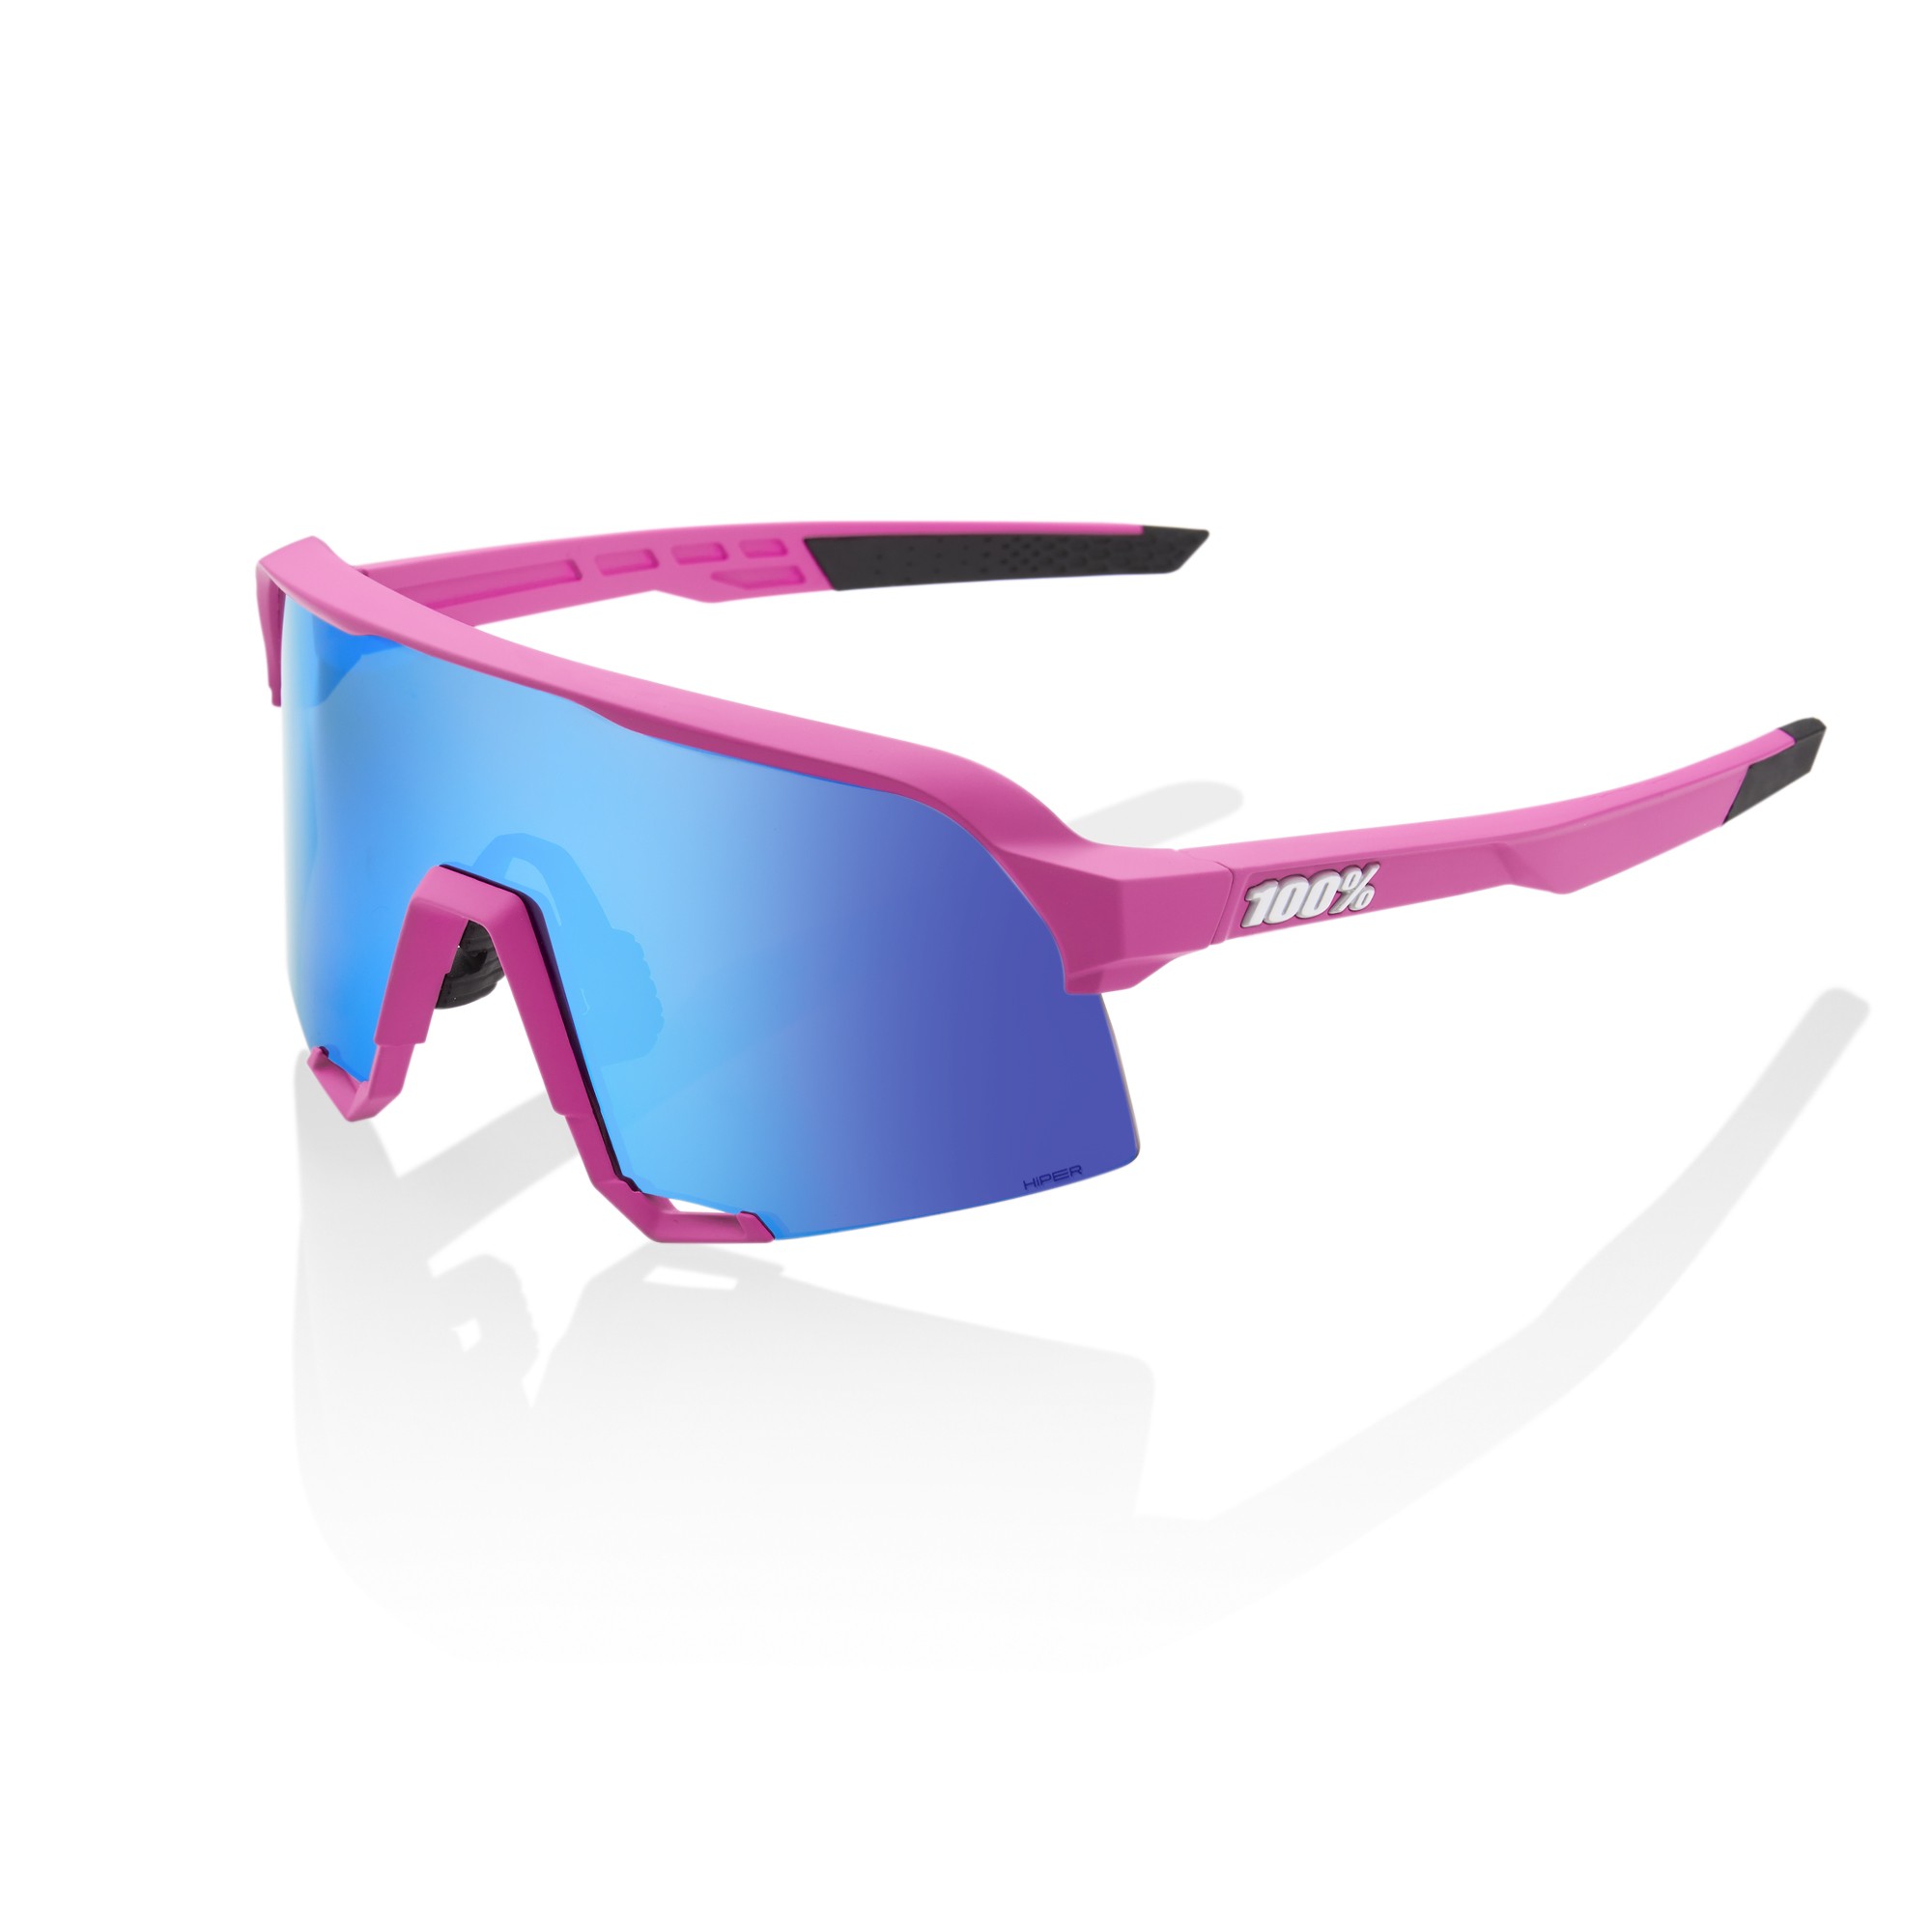 100% S3 lunettes de cyclisme rose mat - hiper blue multilayer mirror lentille